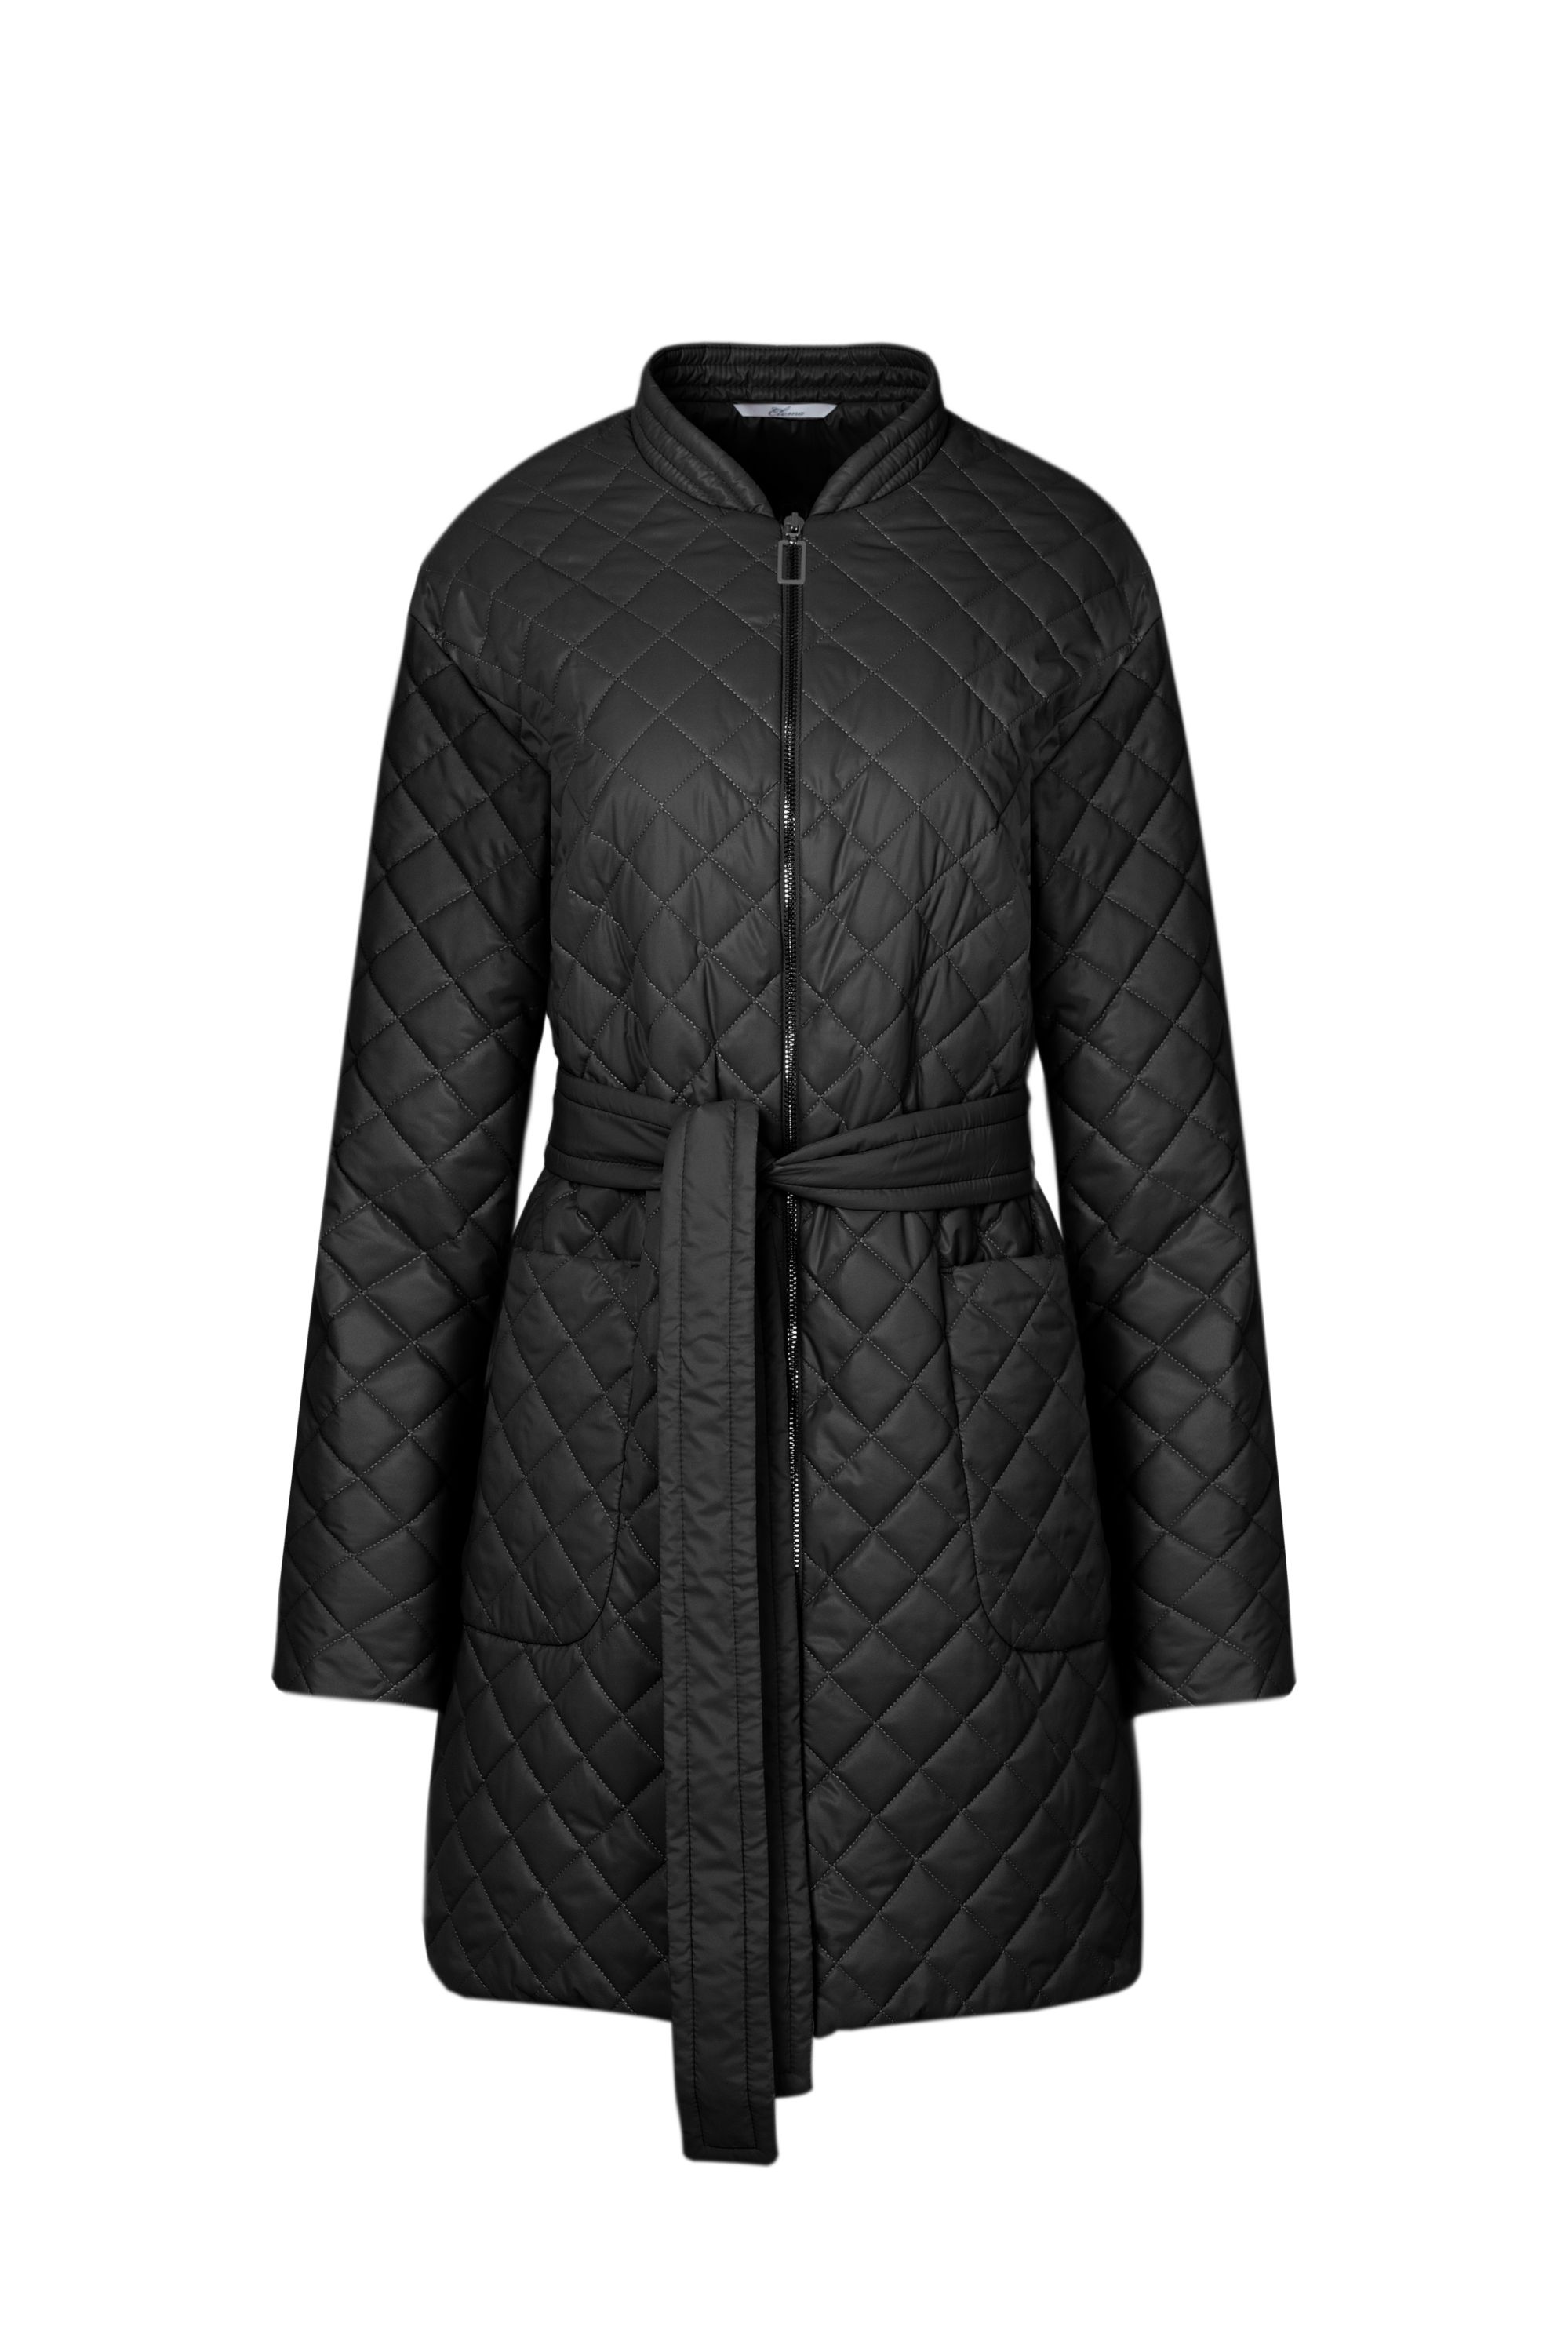 Пальто женское плащевое утепленное 5-12406-1